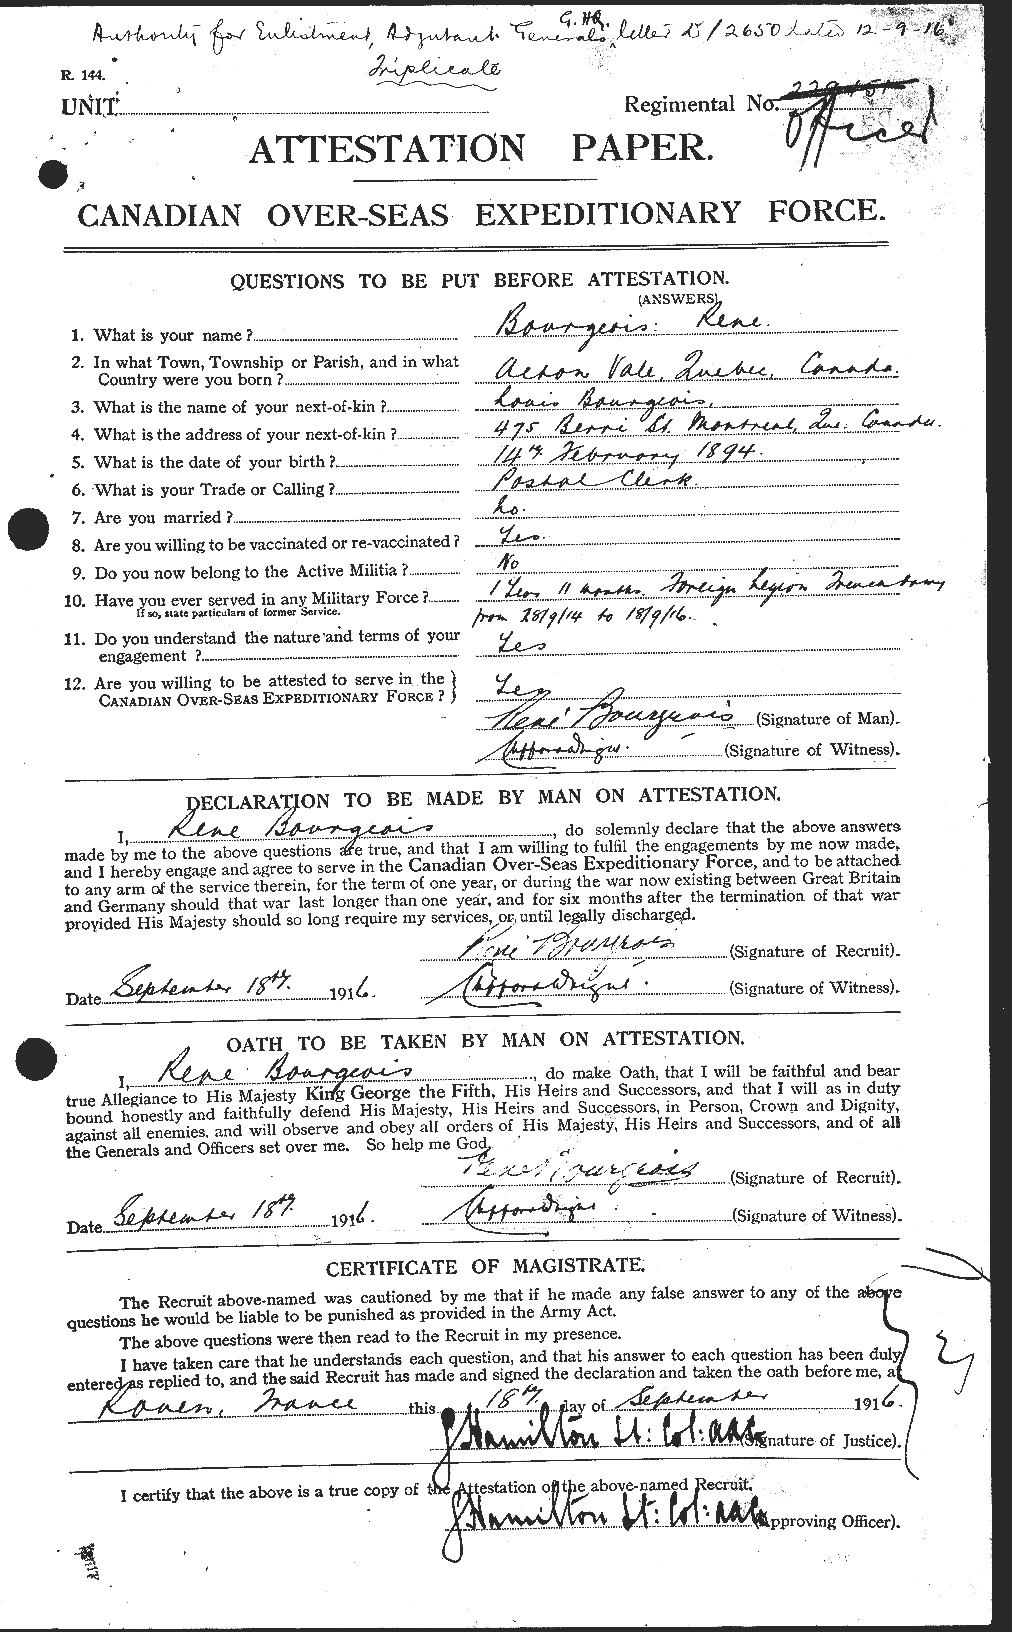 Dossiers du Personnel de la Première Guerre mondiale - CEC 253939a